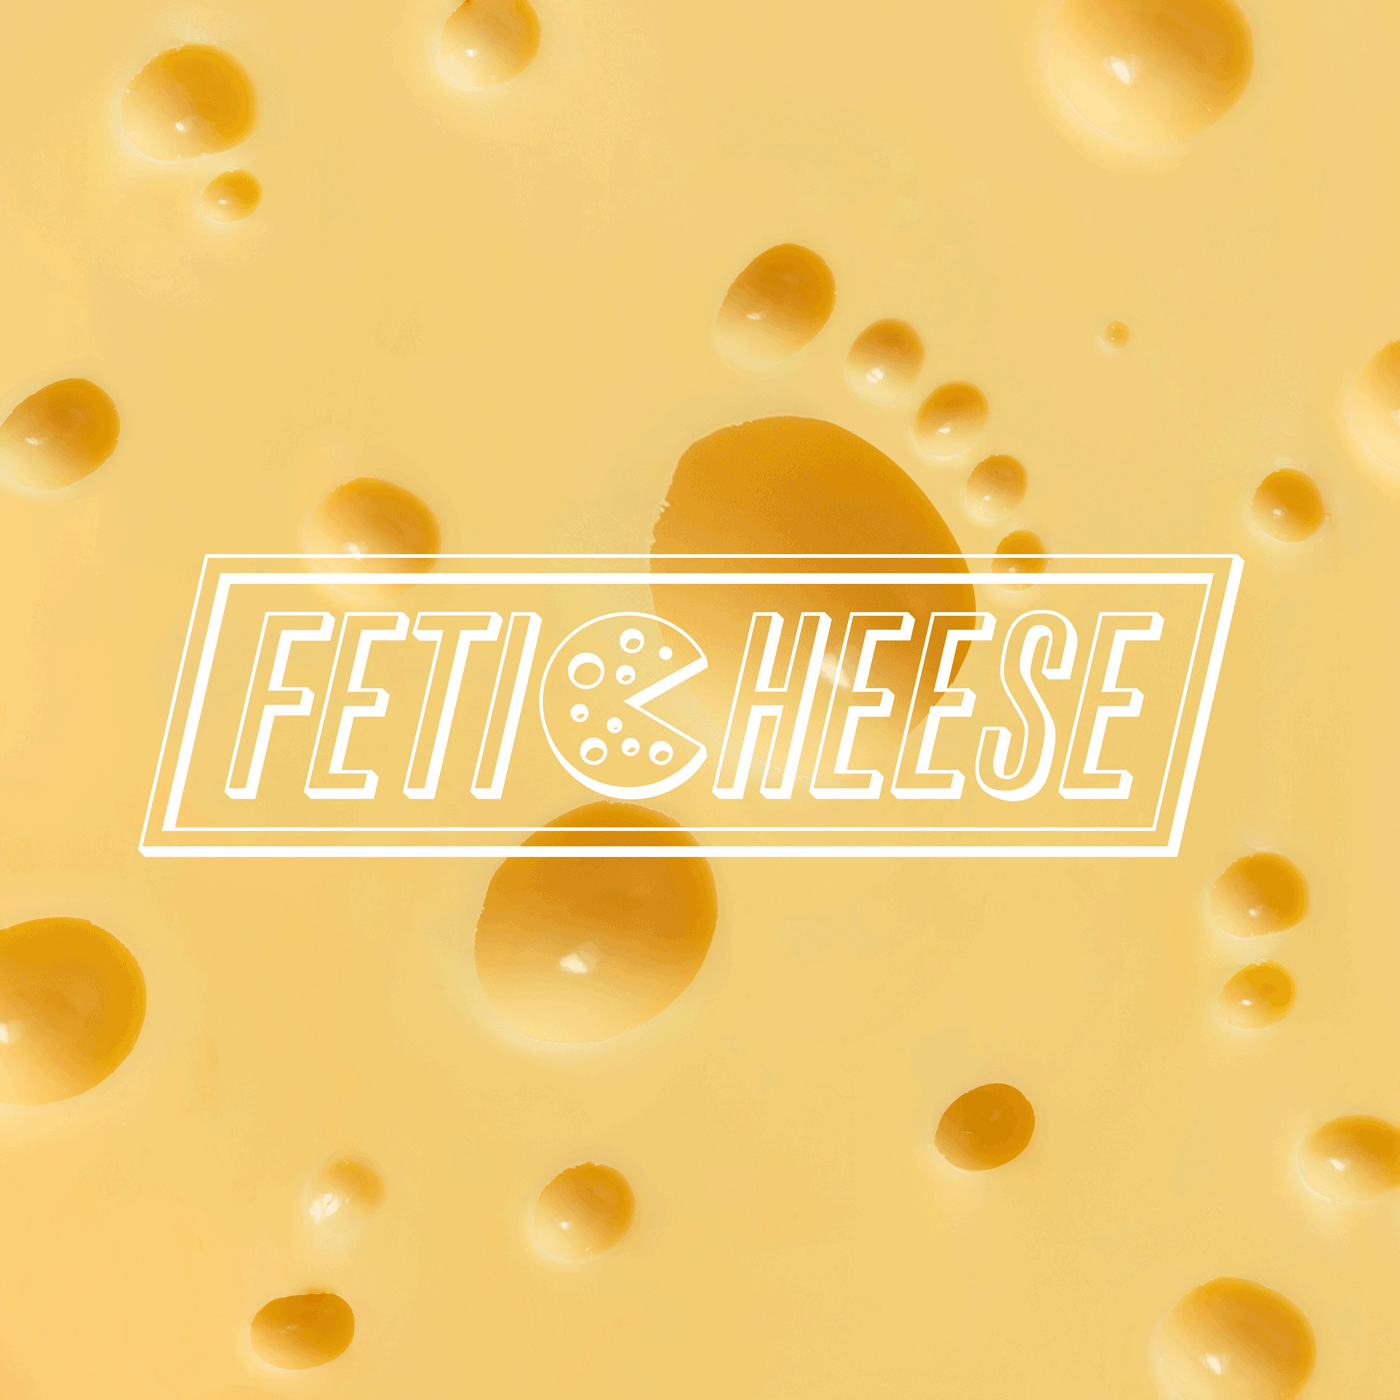 Cheese design feticheese FORMAGGI ODOROSI formaggio LUM@KE odore PIEDI PUZZOLENTI smell sneakers